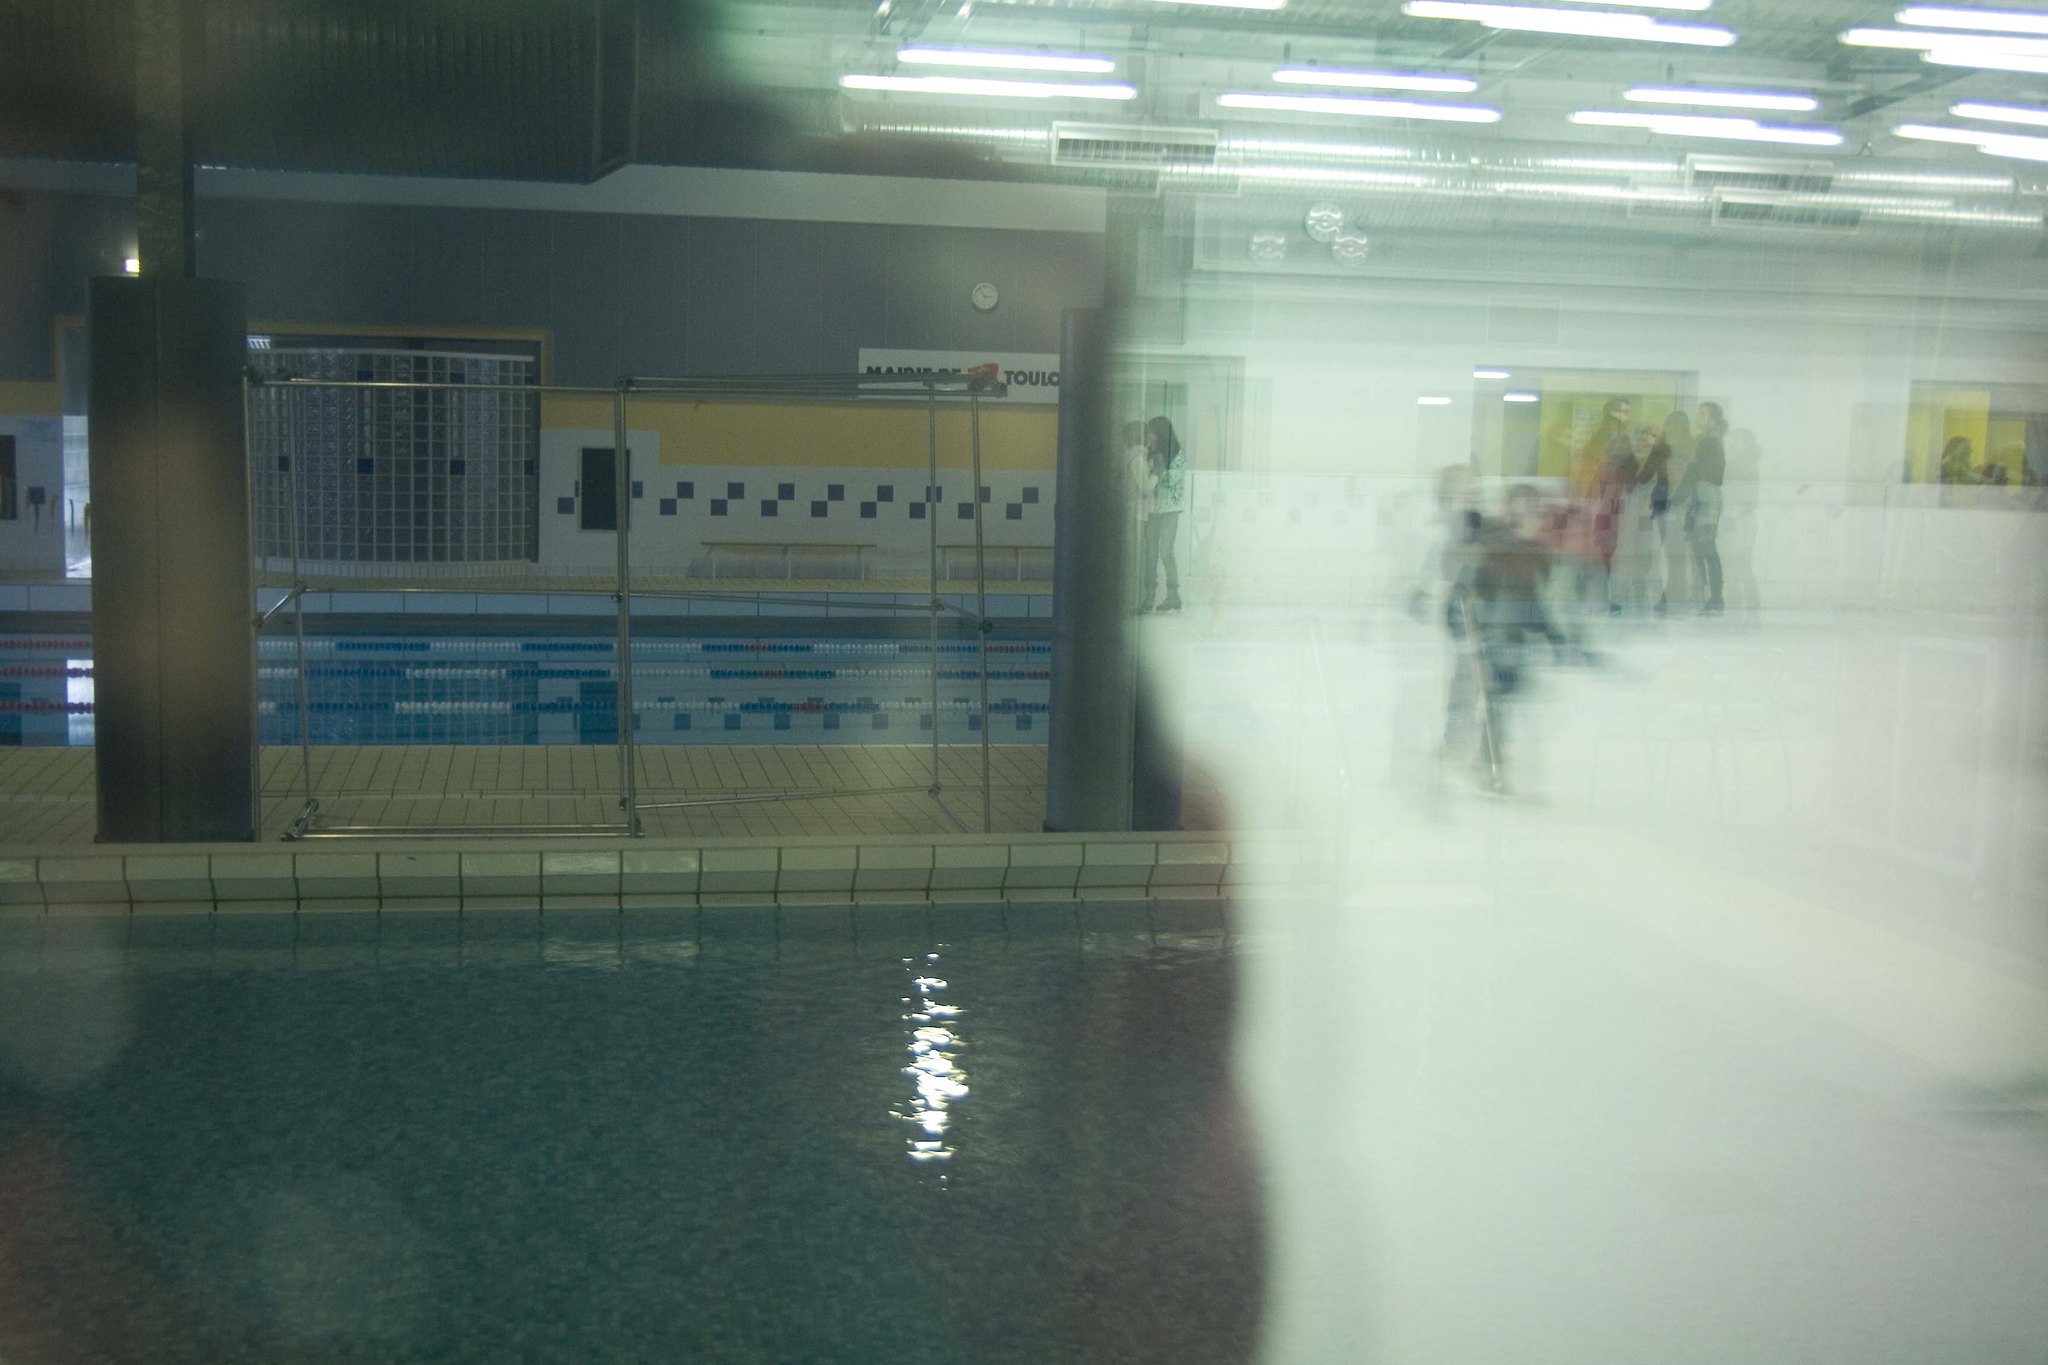 Sumea kuva uimahallista, joka on otettu ikkunan takaa. Kuvassa oikealla näkyy epätarkasti piirtyneitä hahmoja, kuvassa vasemmalla on uimahallin uimaosasto. 